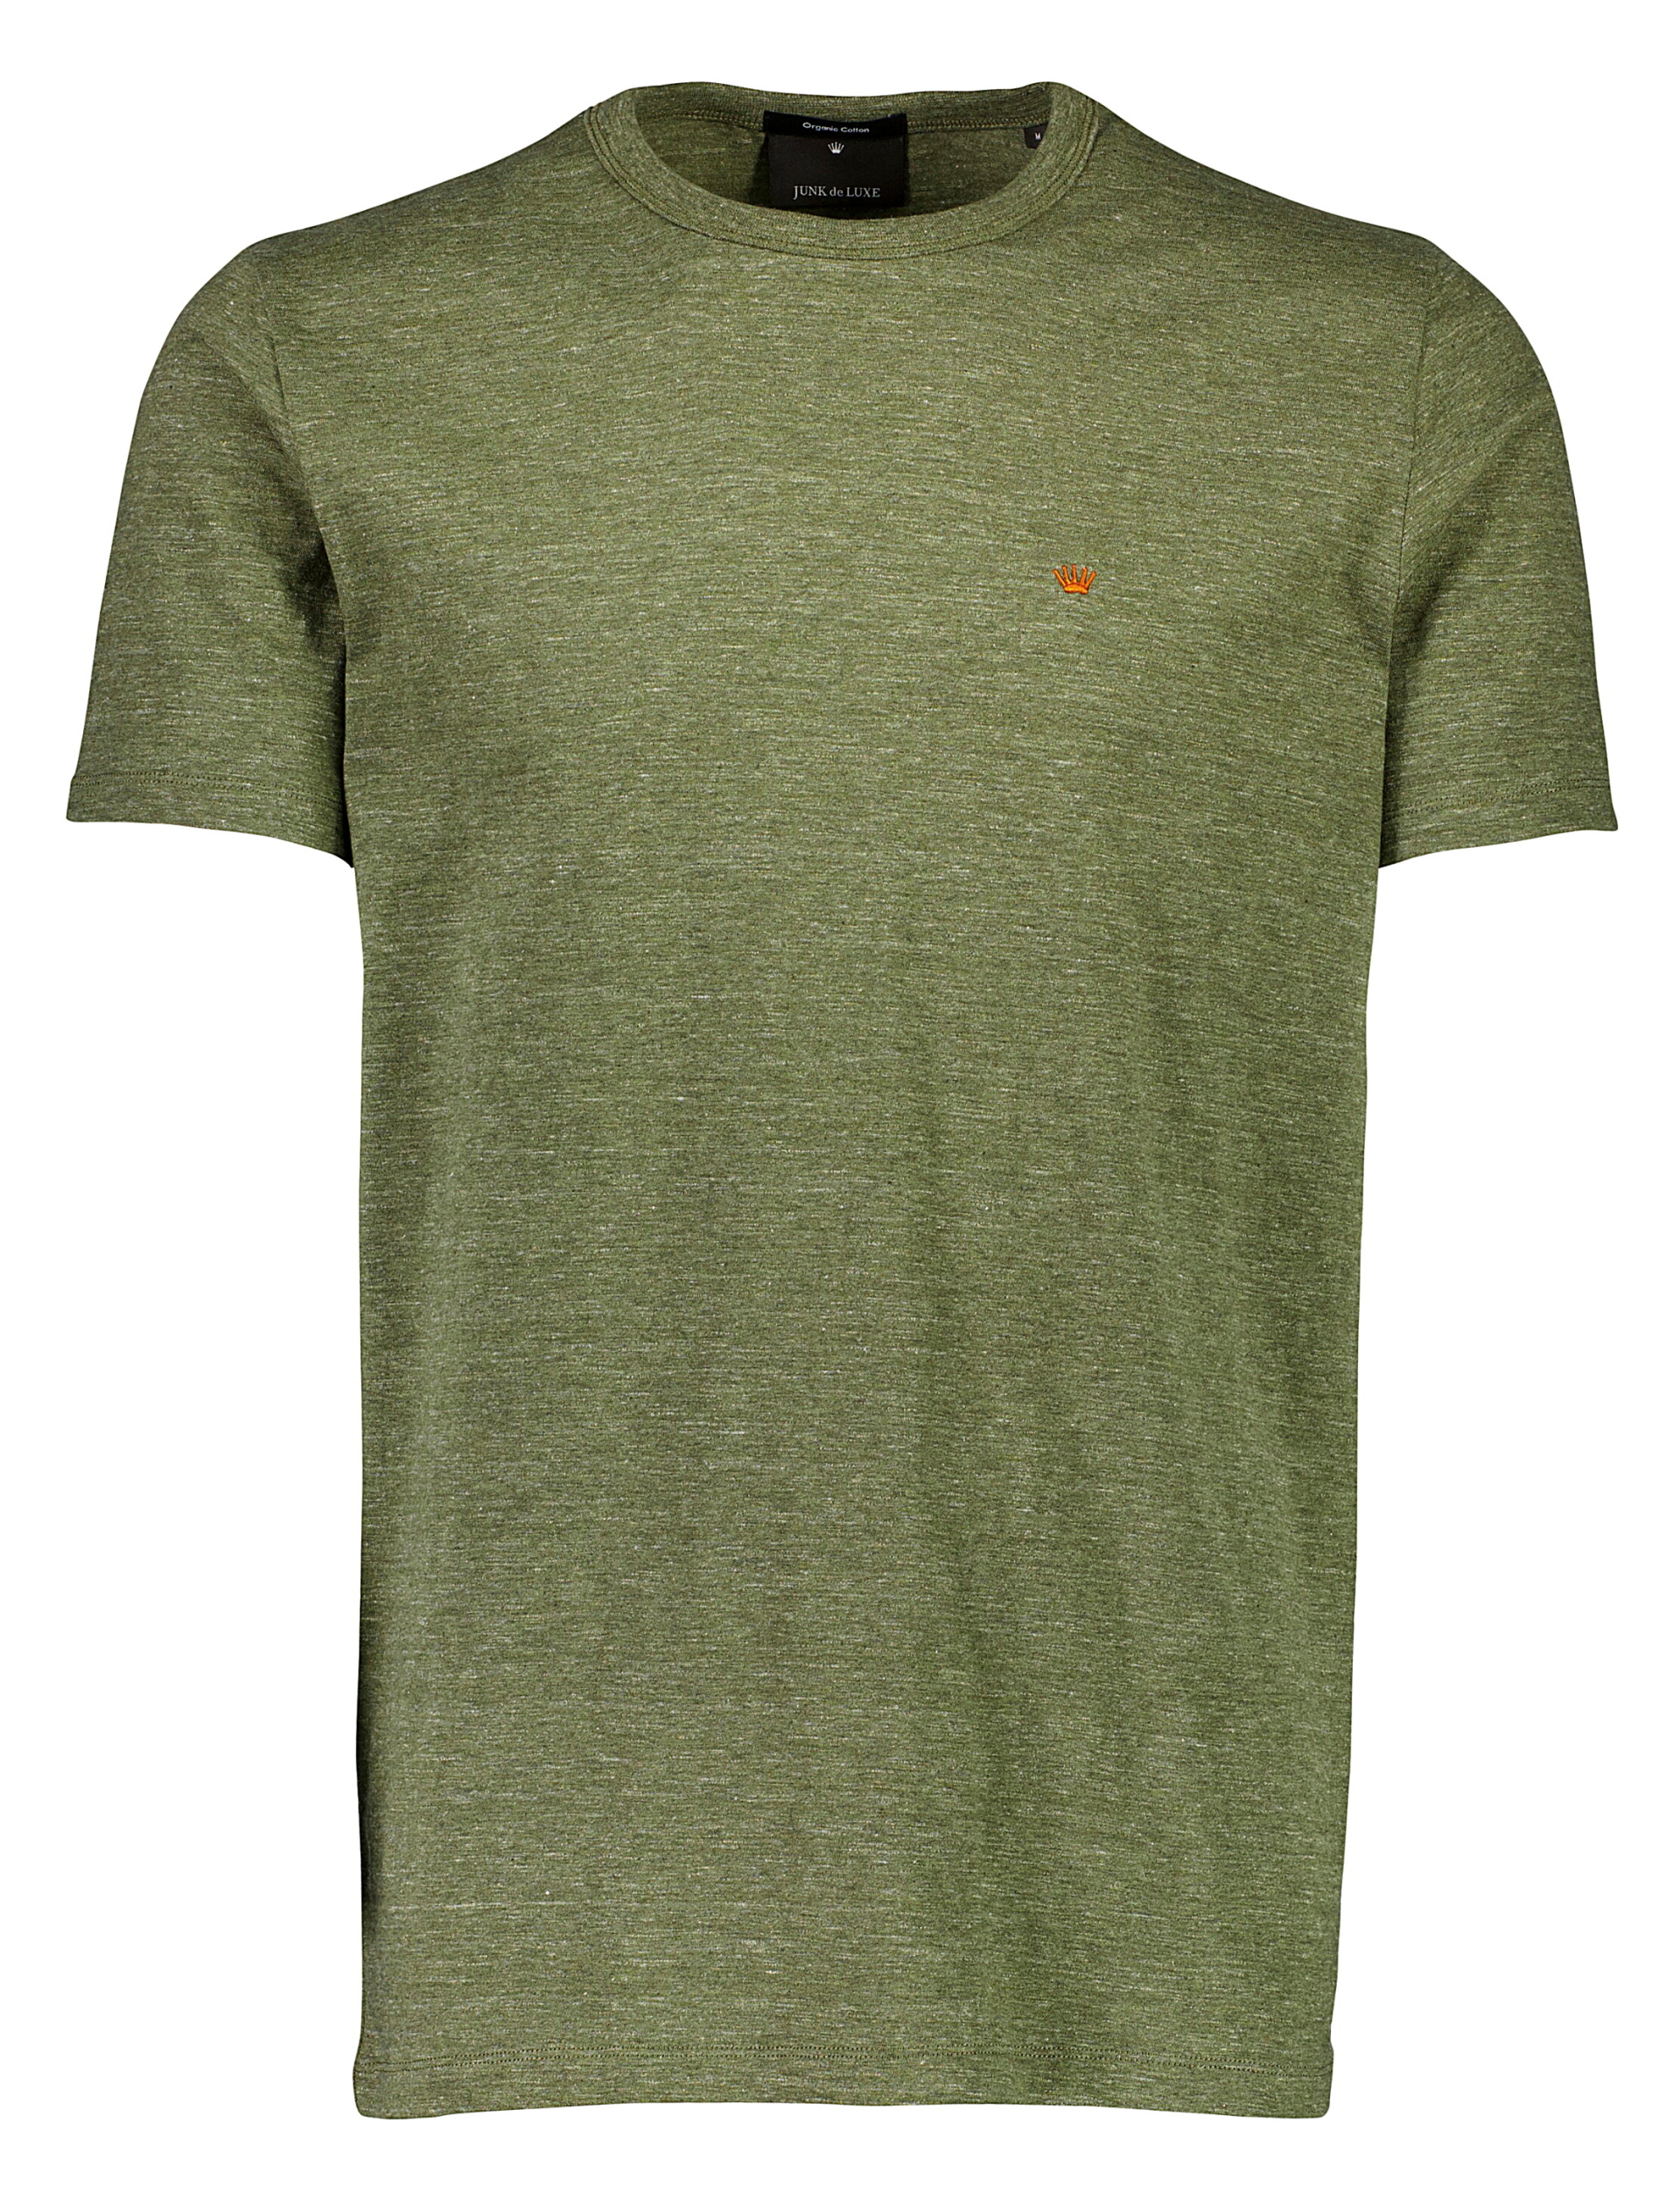 Junk de Luxe T-shirt grøn / army mel